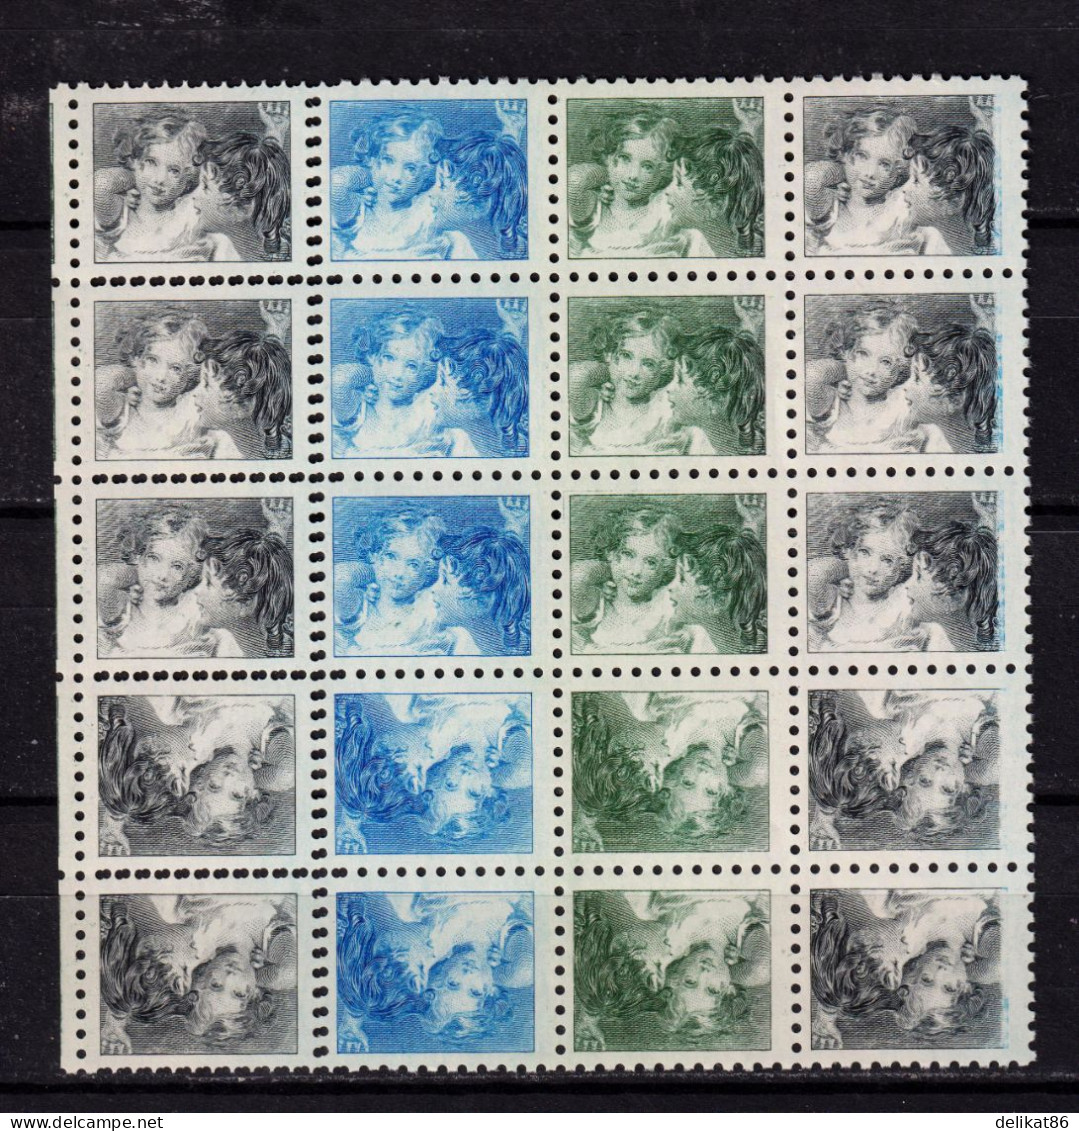 Probedruck Test Stamp Maschinprobe Specimen Canada 1935 Baby Sister - Proofs & Reprints